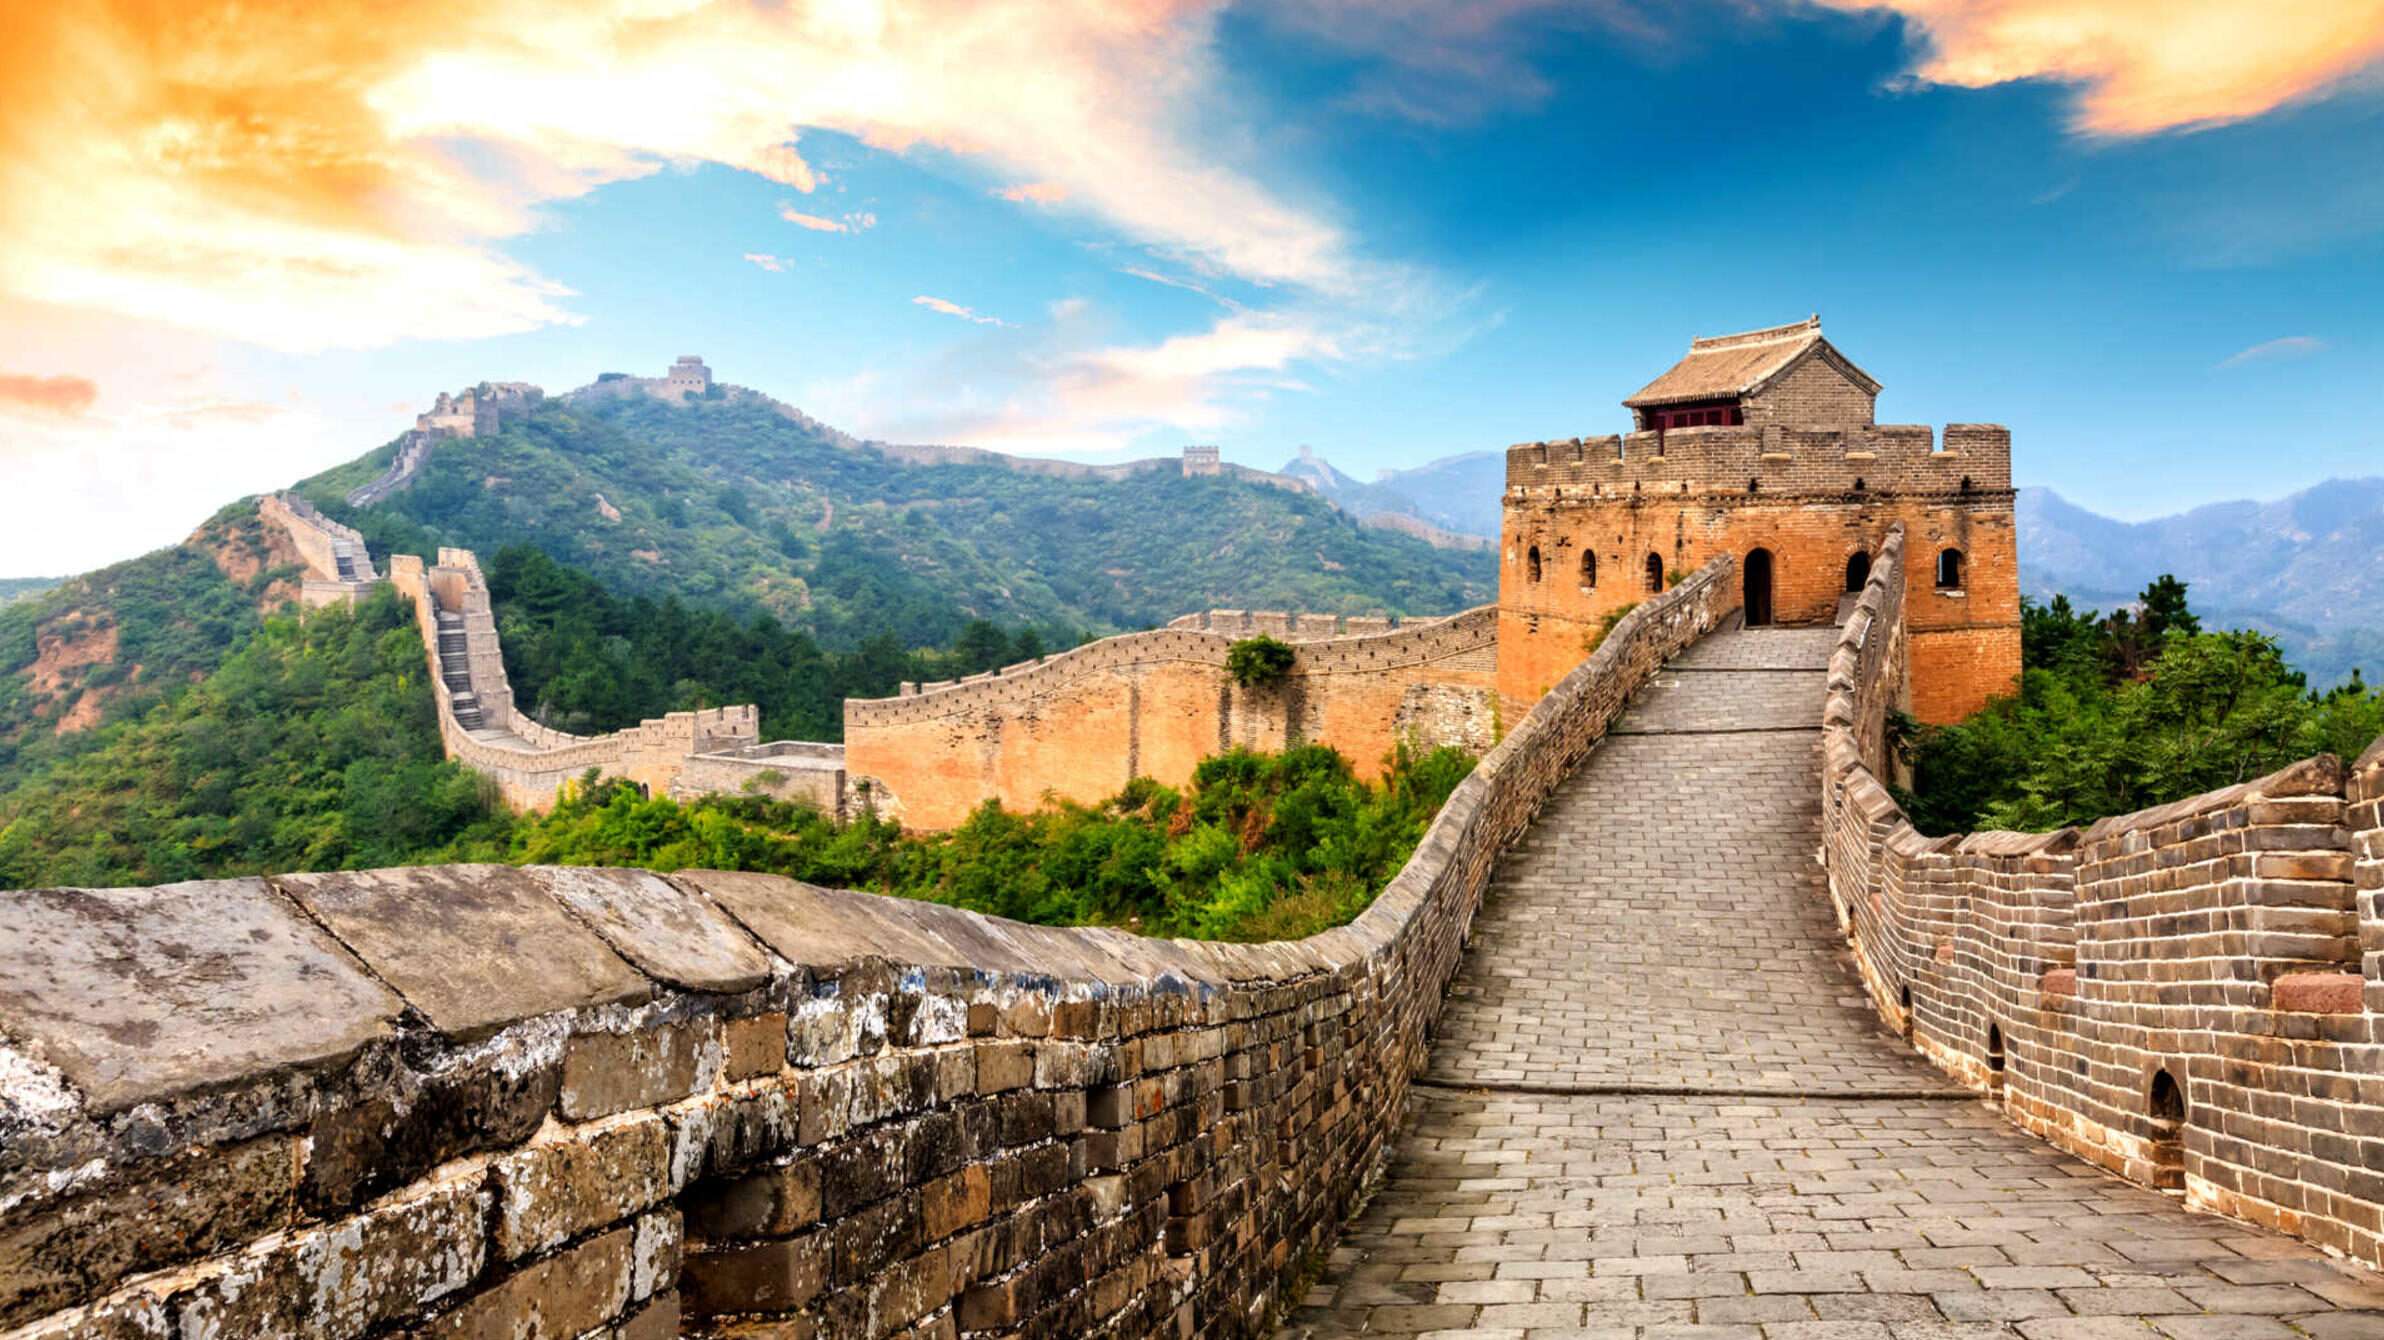 China's Great Wall of China